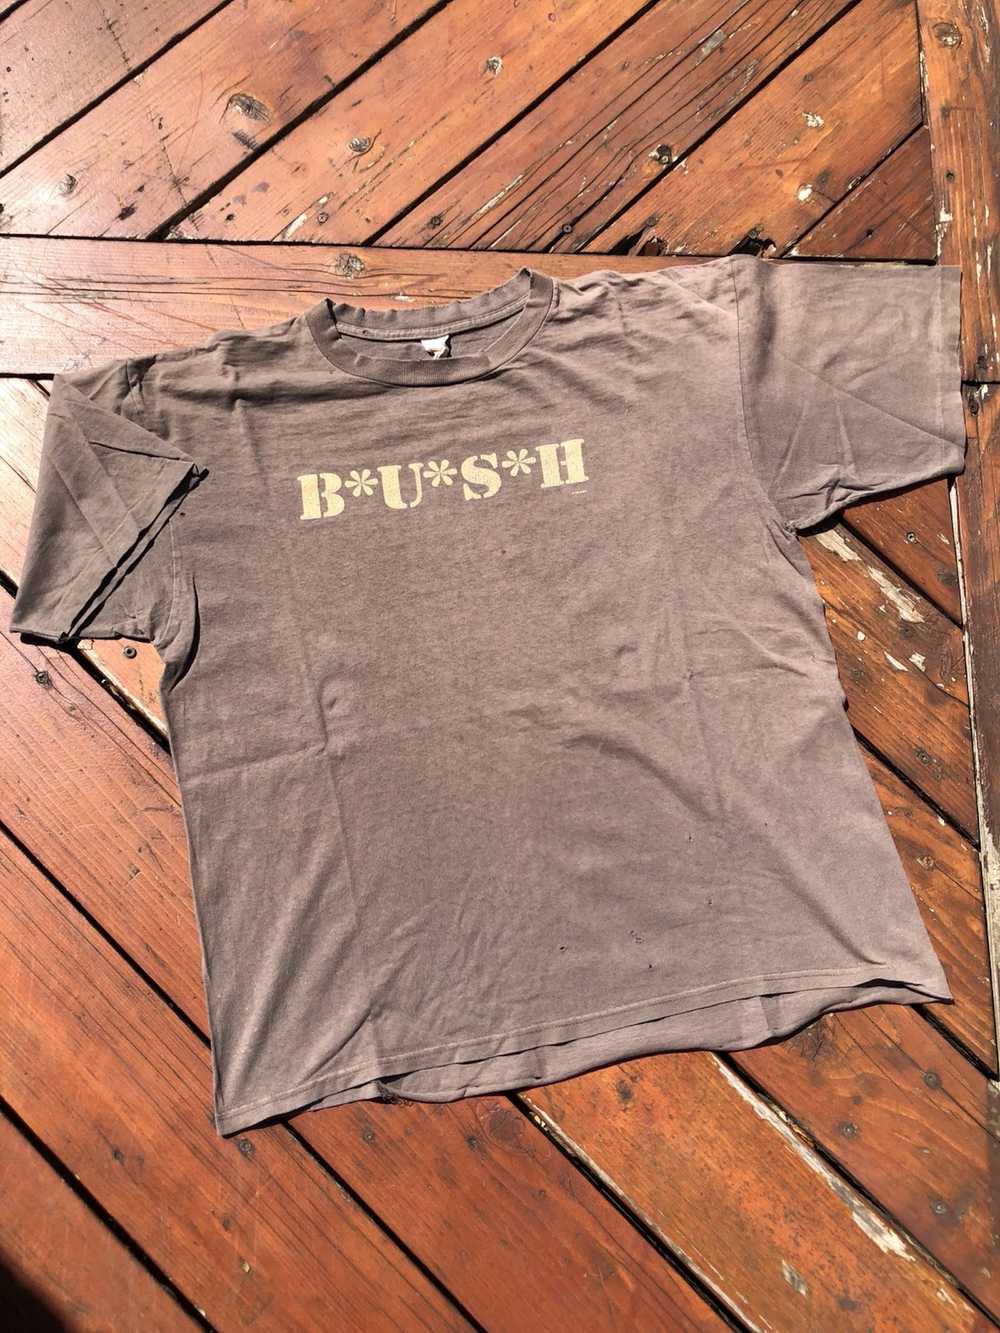 Vintage bush concert shirt - Gem